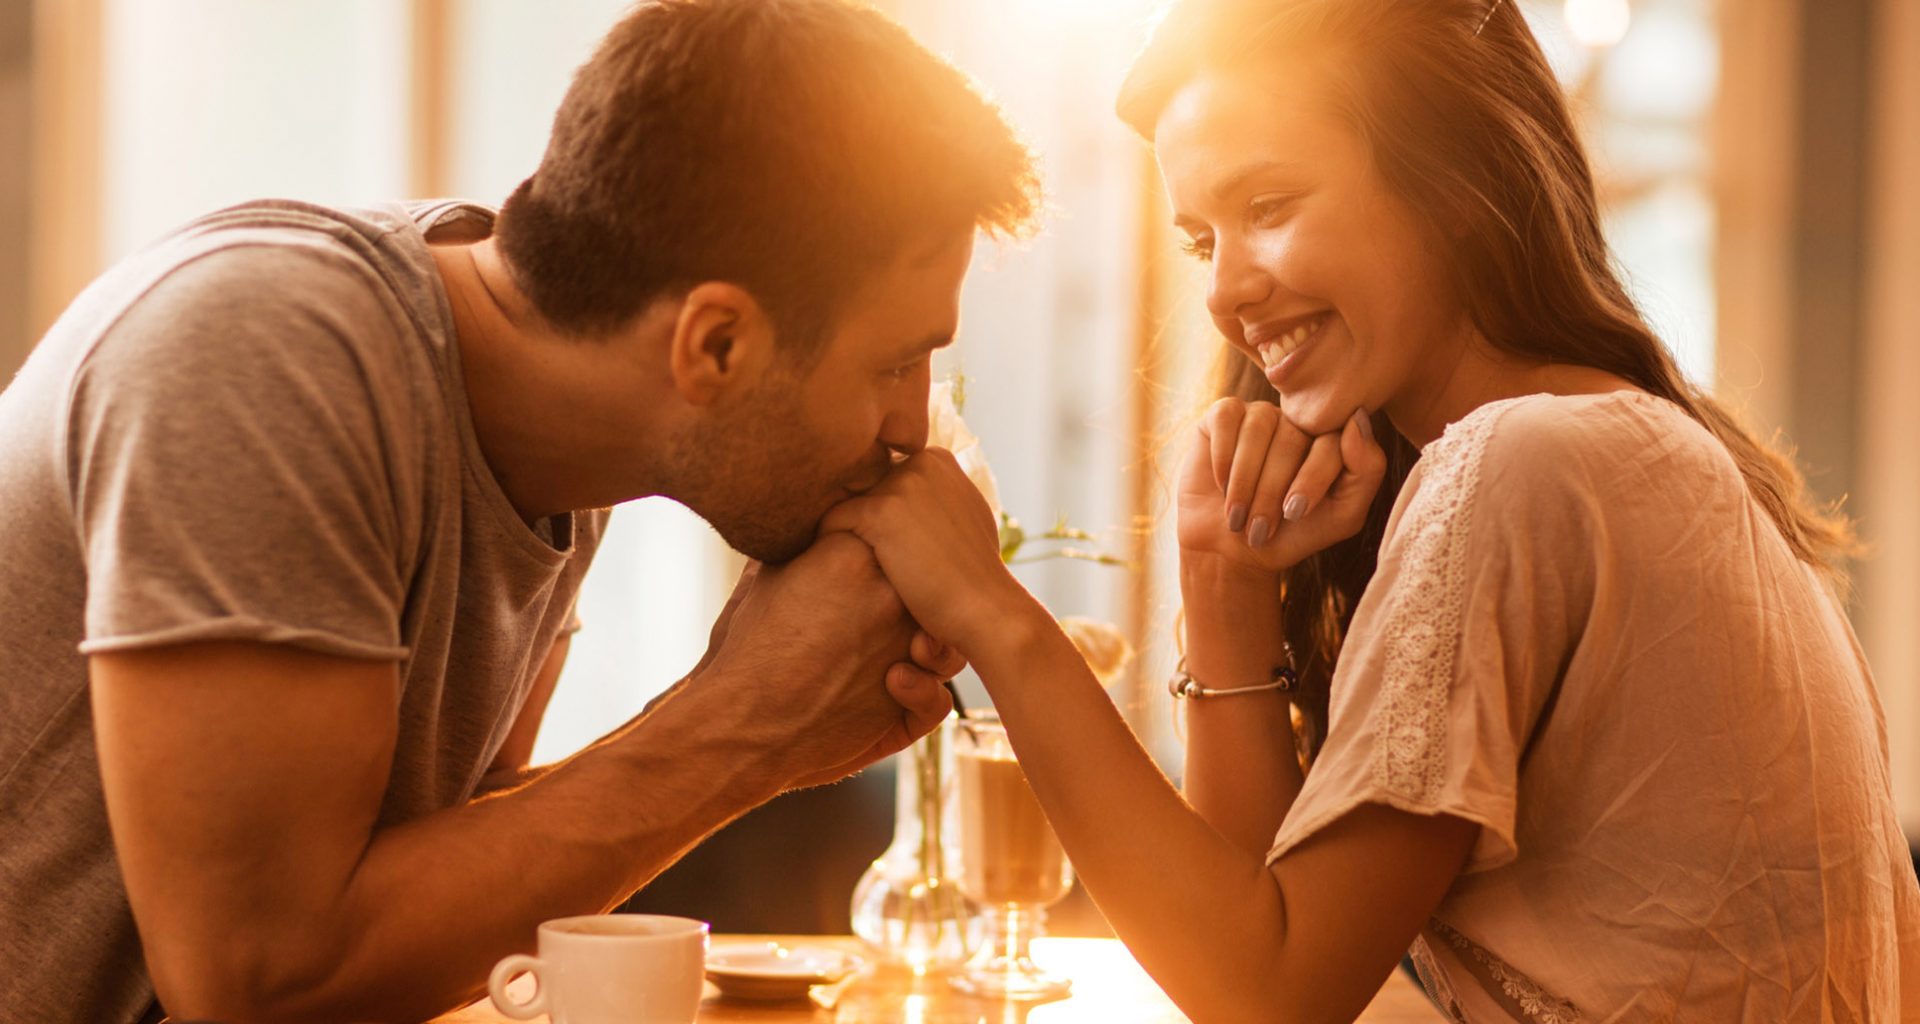 Liebe Männer: Diese Flirt-Tipps aus dem Internet solltet ihr AUF KEINEN FALL befolgen | GQ Germany